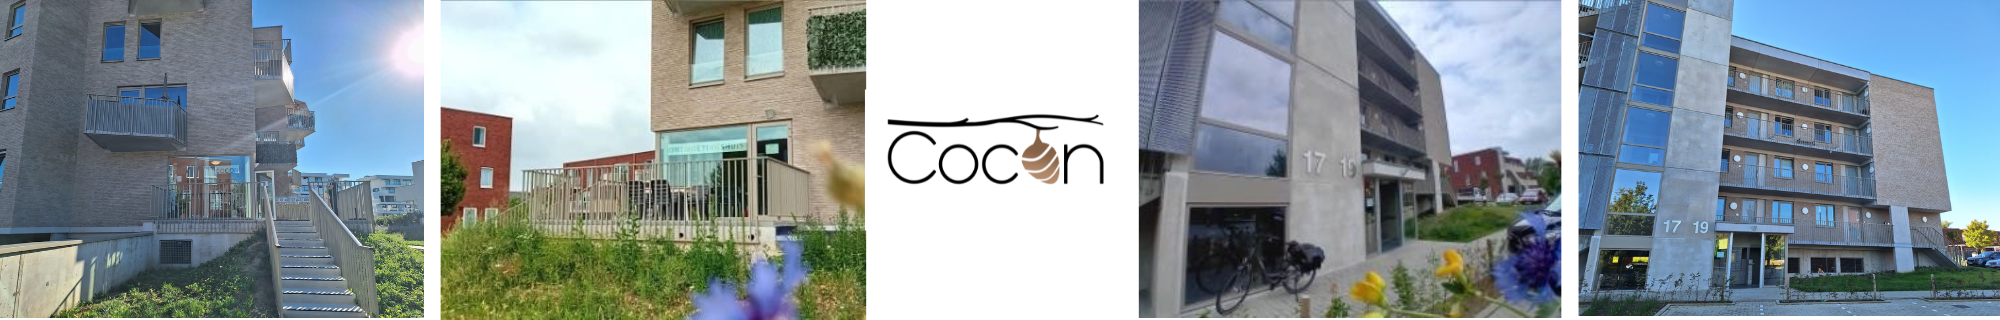 Cocon onthmoetingshuis beveren